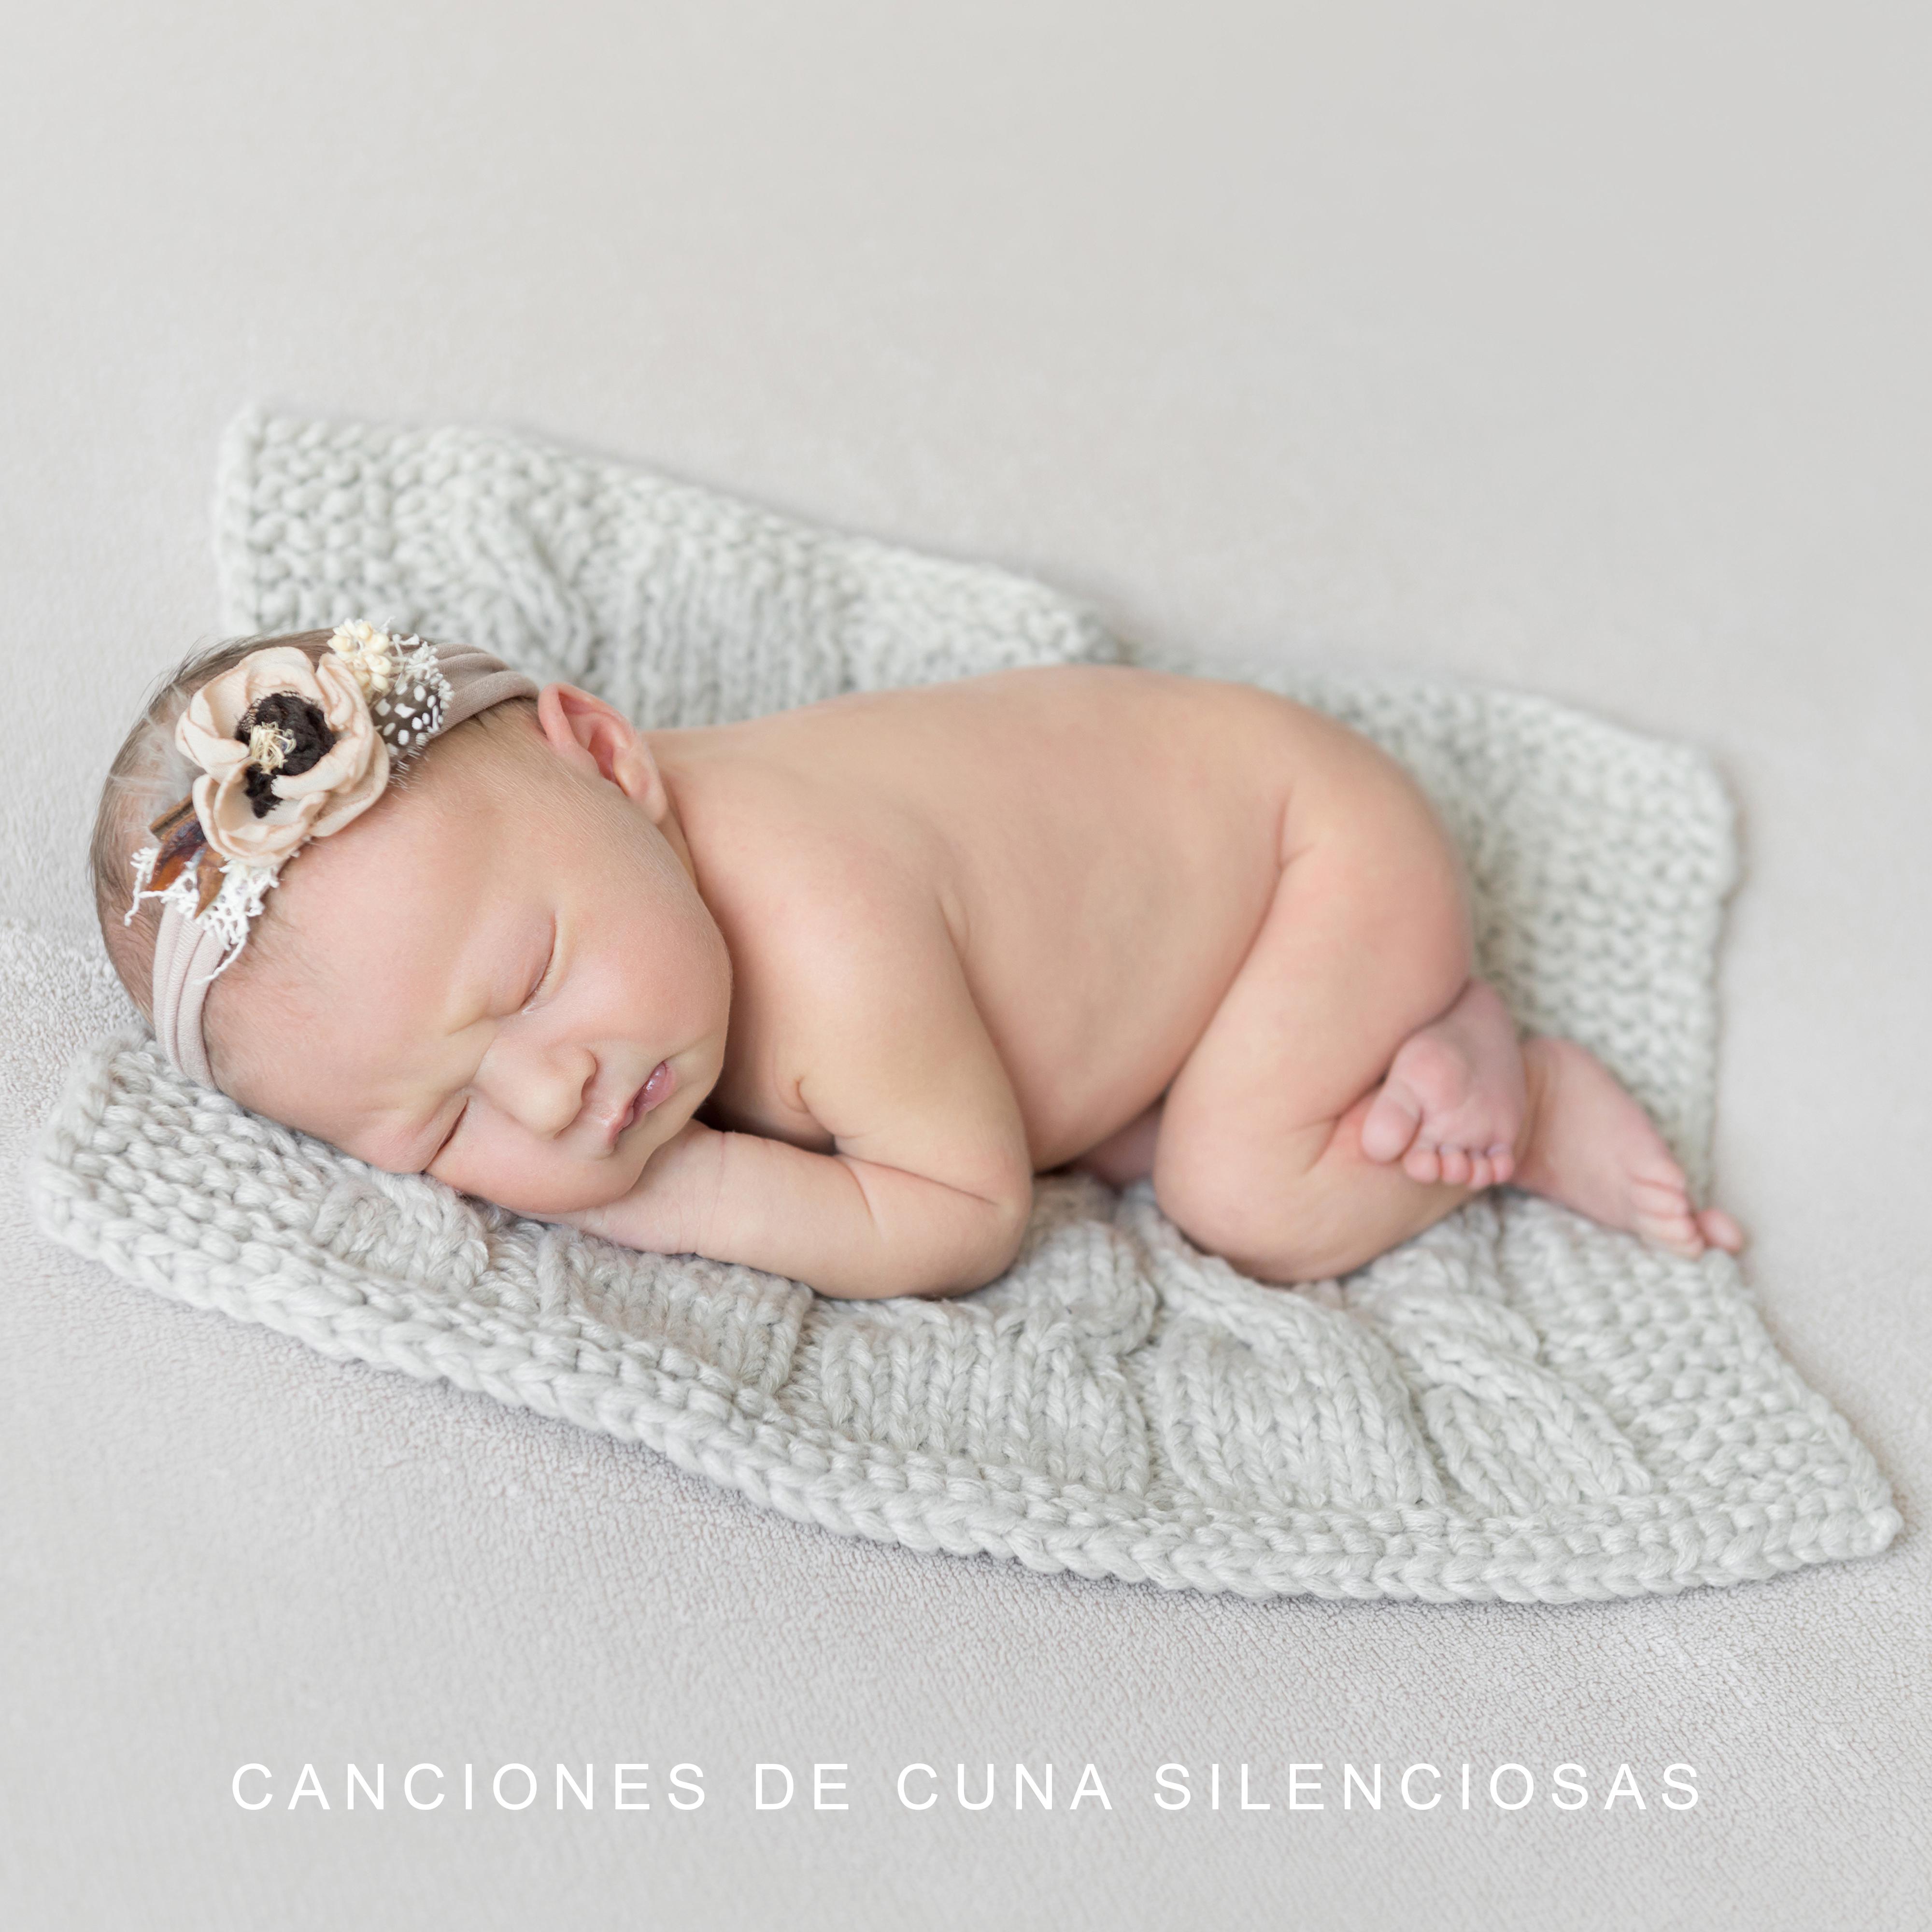 Canciones de Cuna Silenciosas  Coleccio n de 15 Mejores Canciones de Cuna para Dormir o Tomar Siestas para Su Bebe